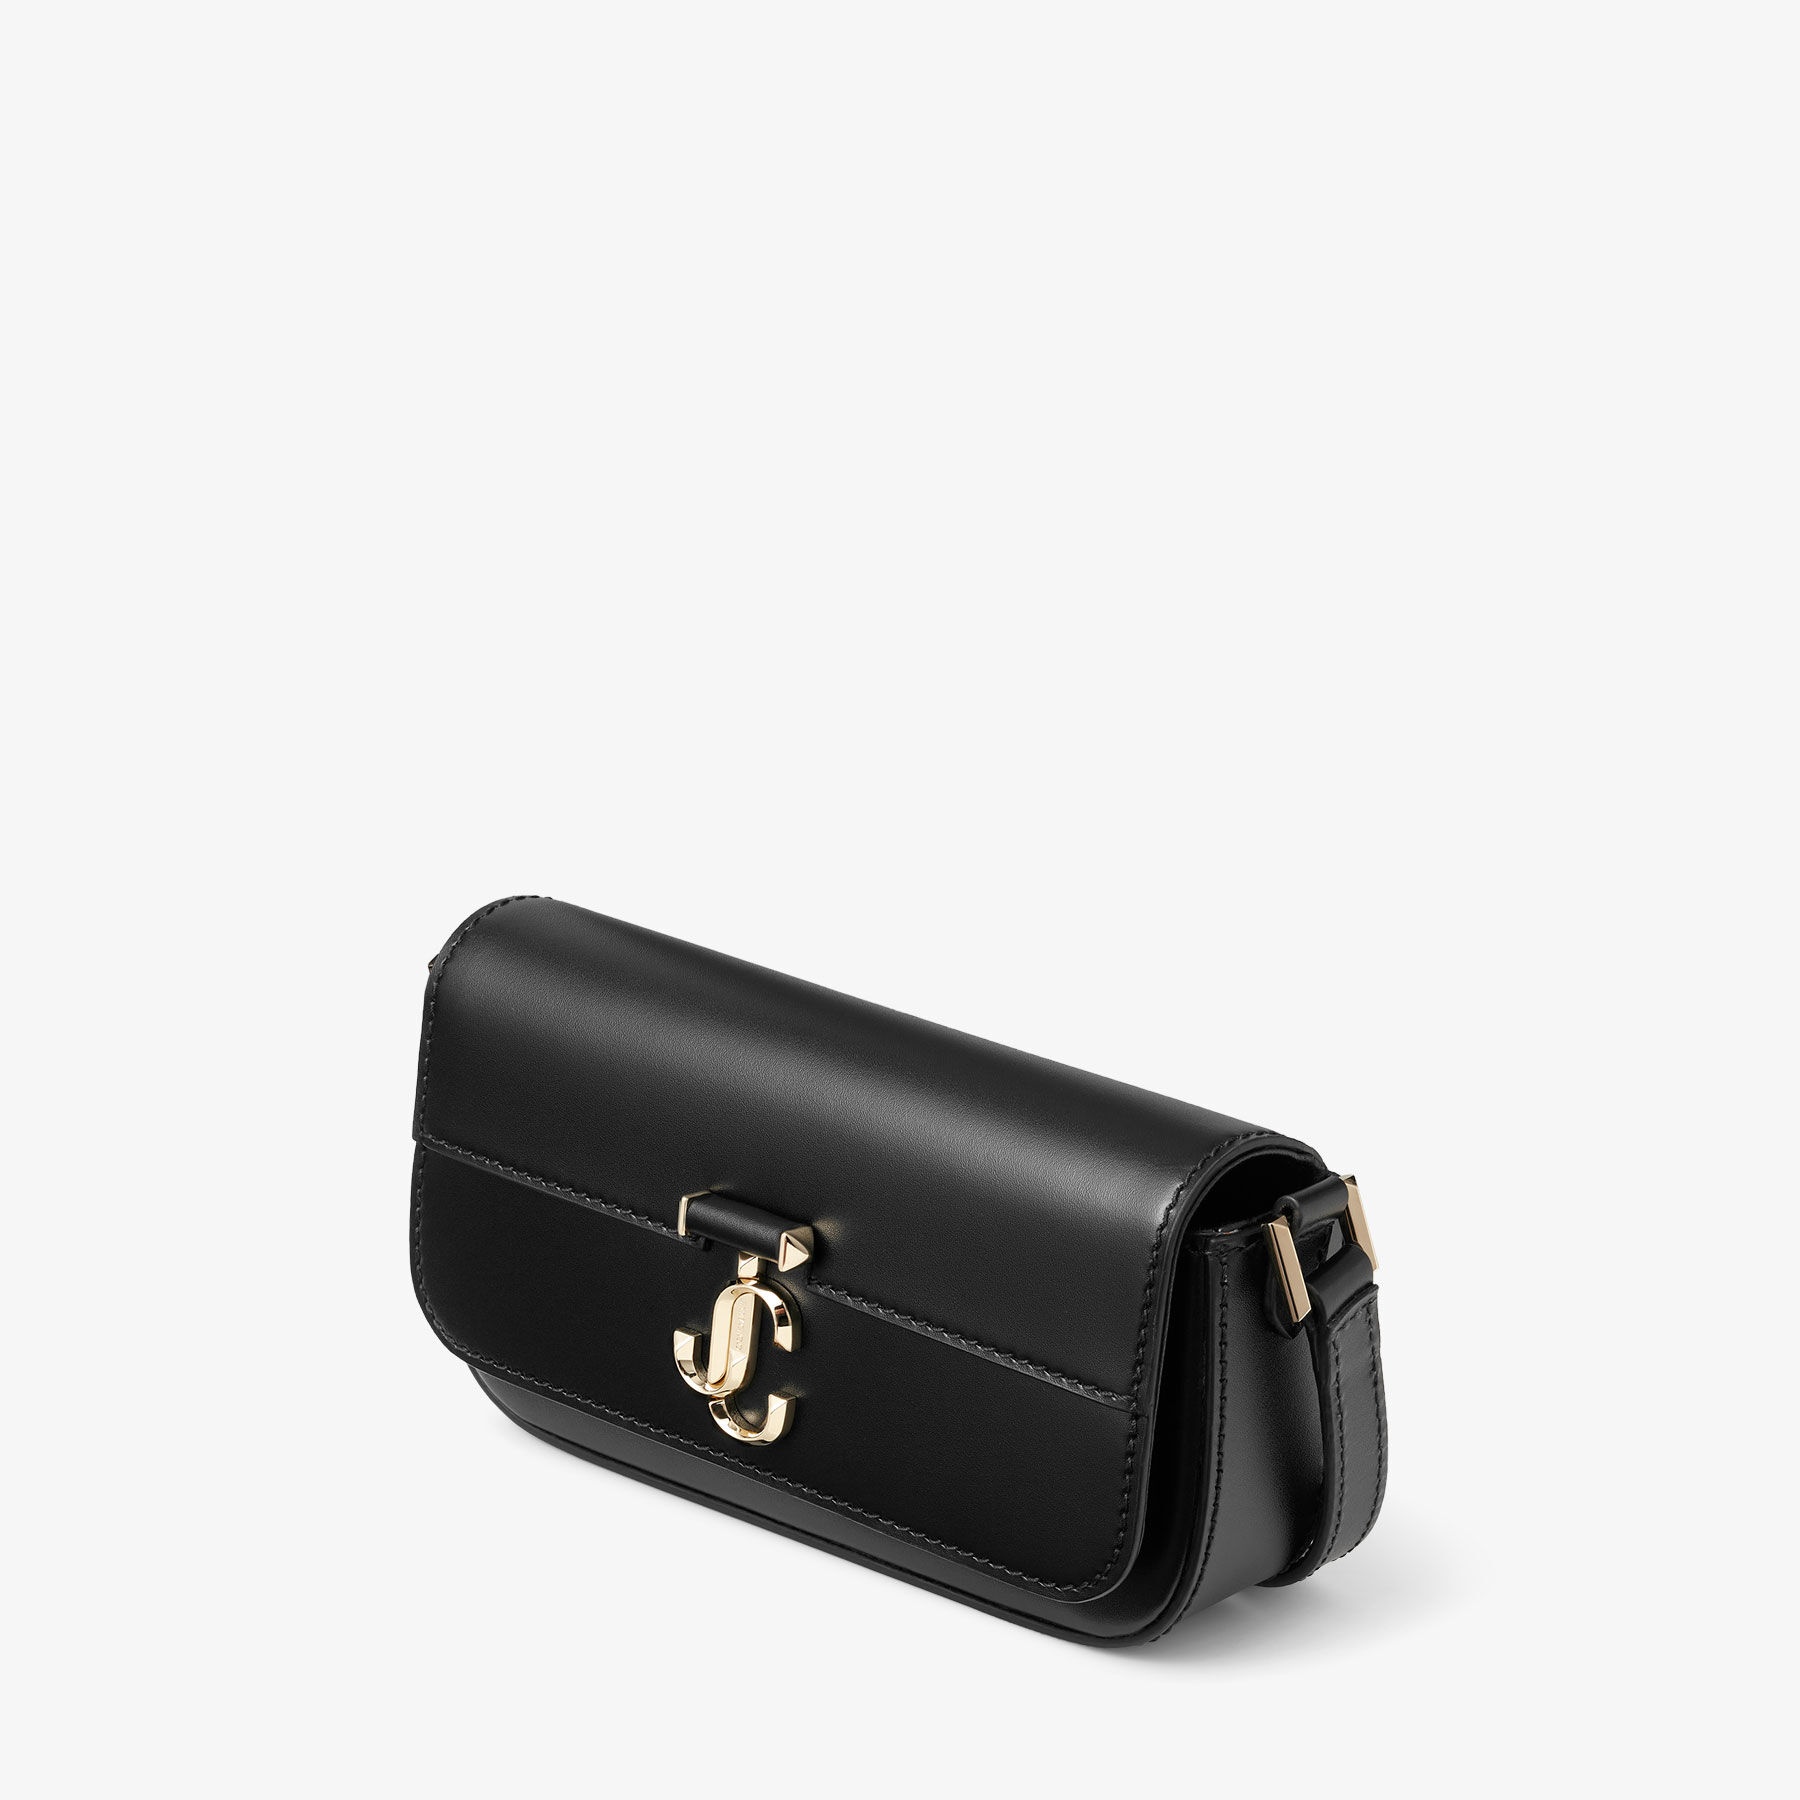 Varenne Mini Shoulder
Black Leather Mini Shoulder Bag with JC Emblem - 3